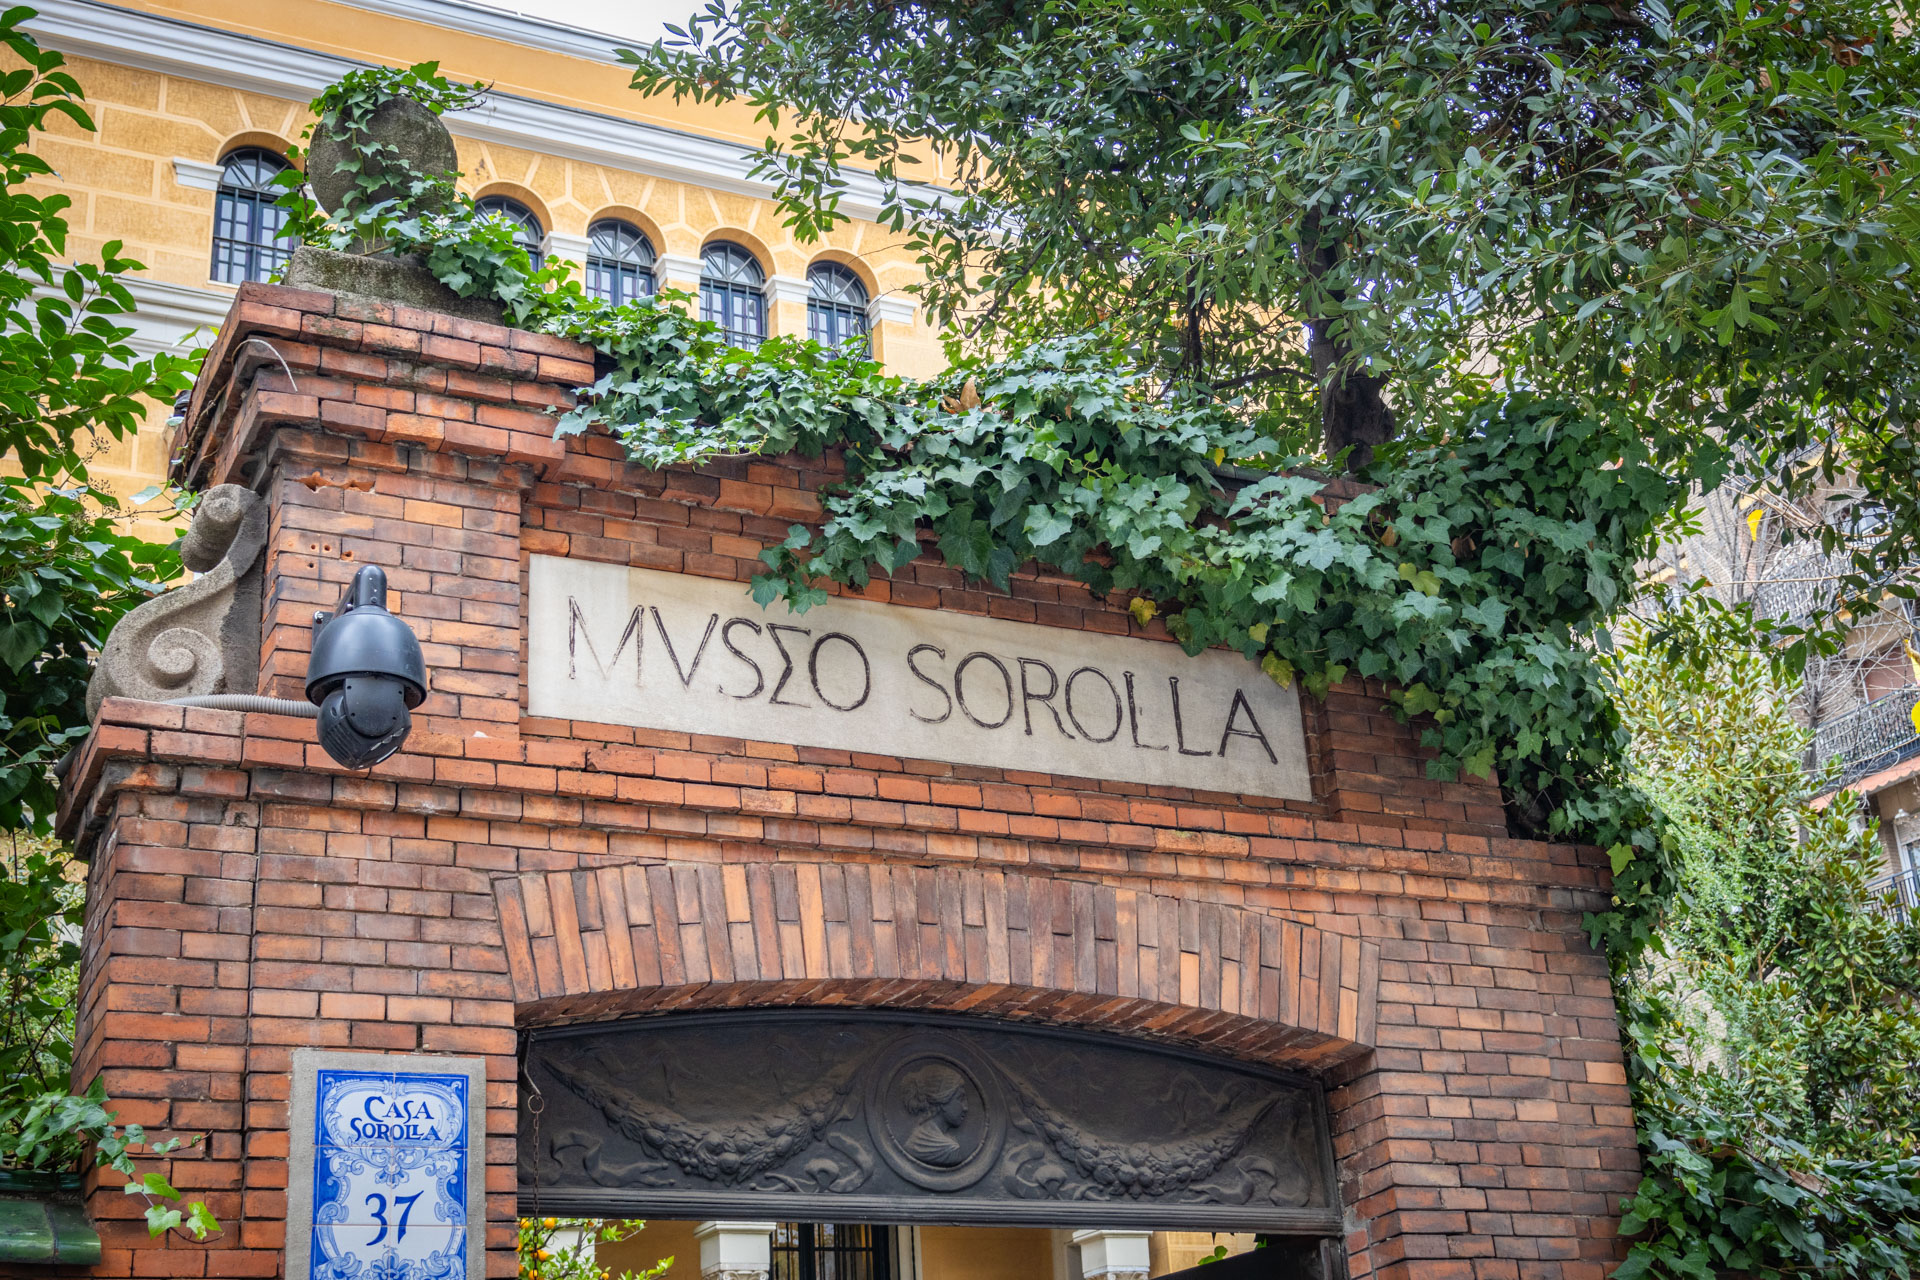 Bakstenen toegangspoort waar in Romeins lettertype 'Museo Sorolla' in staat met erachter een groot geel landhuis.